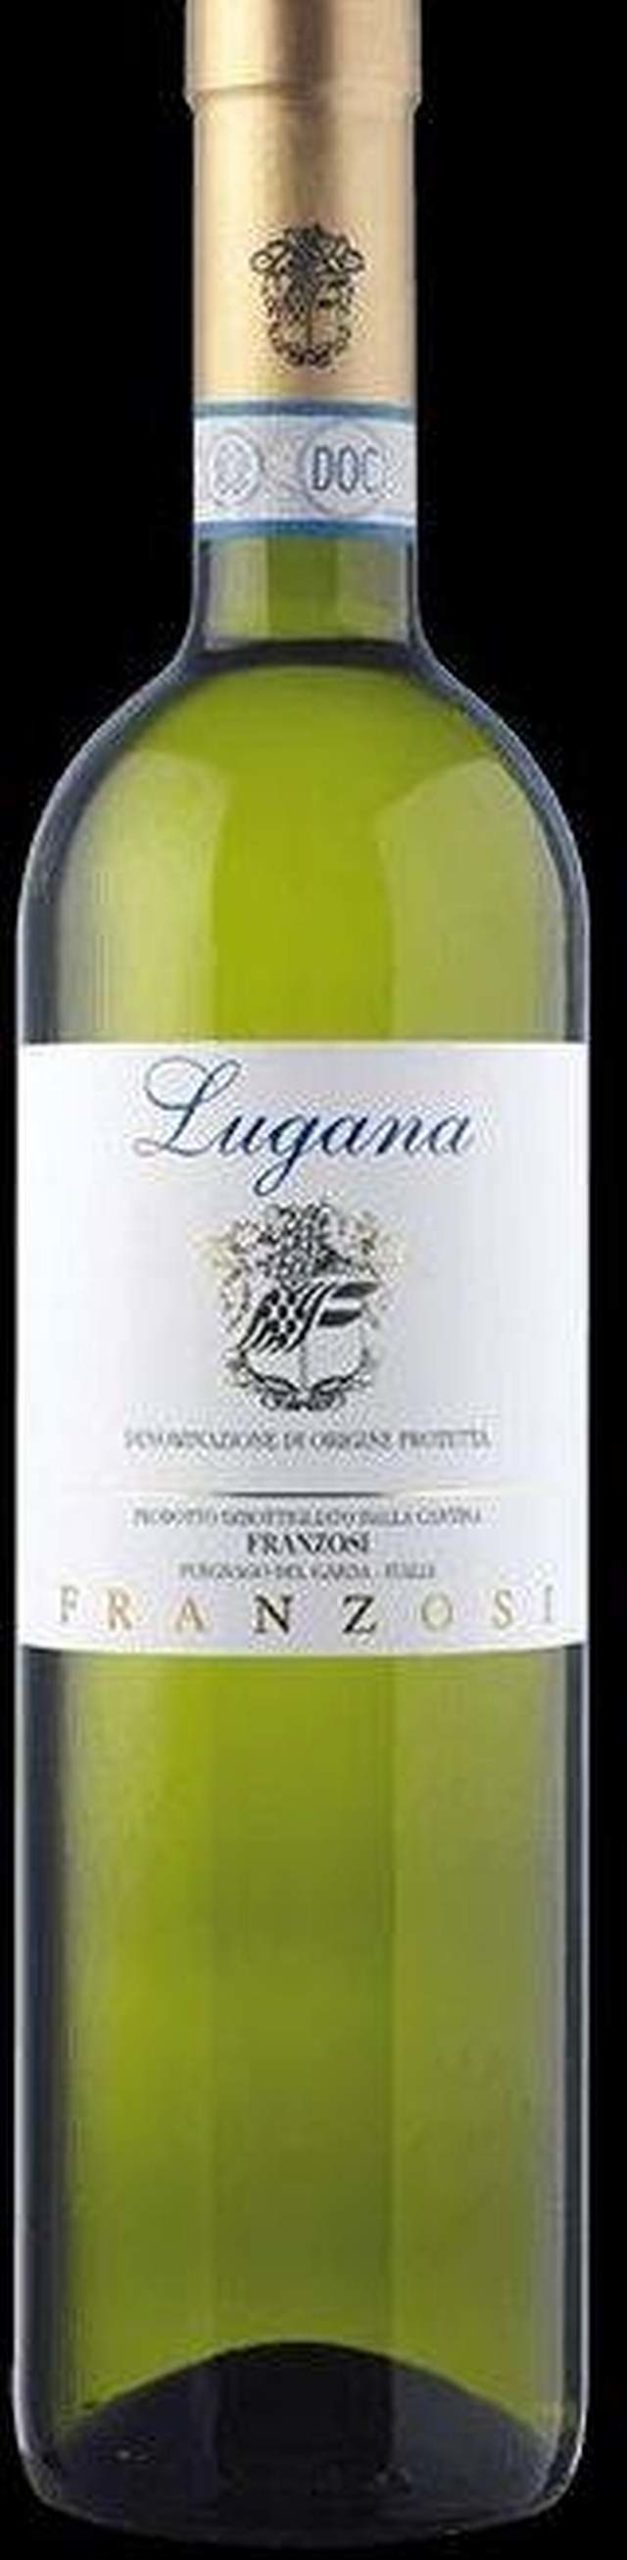 Lugana DOP von Franzosi - ein herrlich frischer und sehr aromatischer Sommerwein